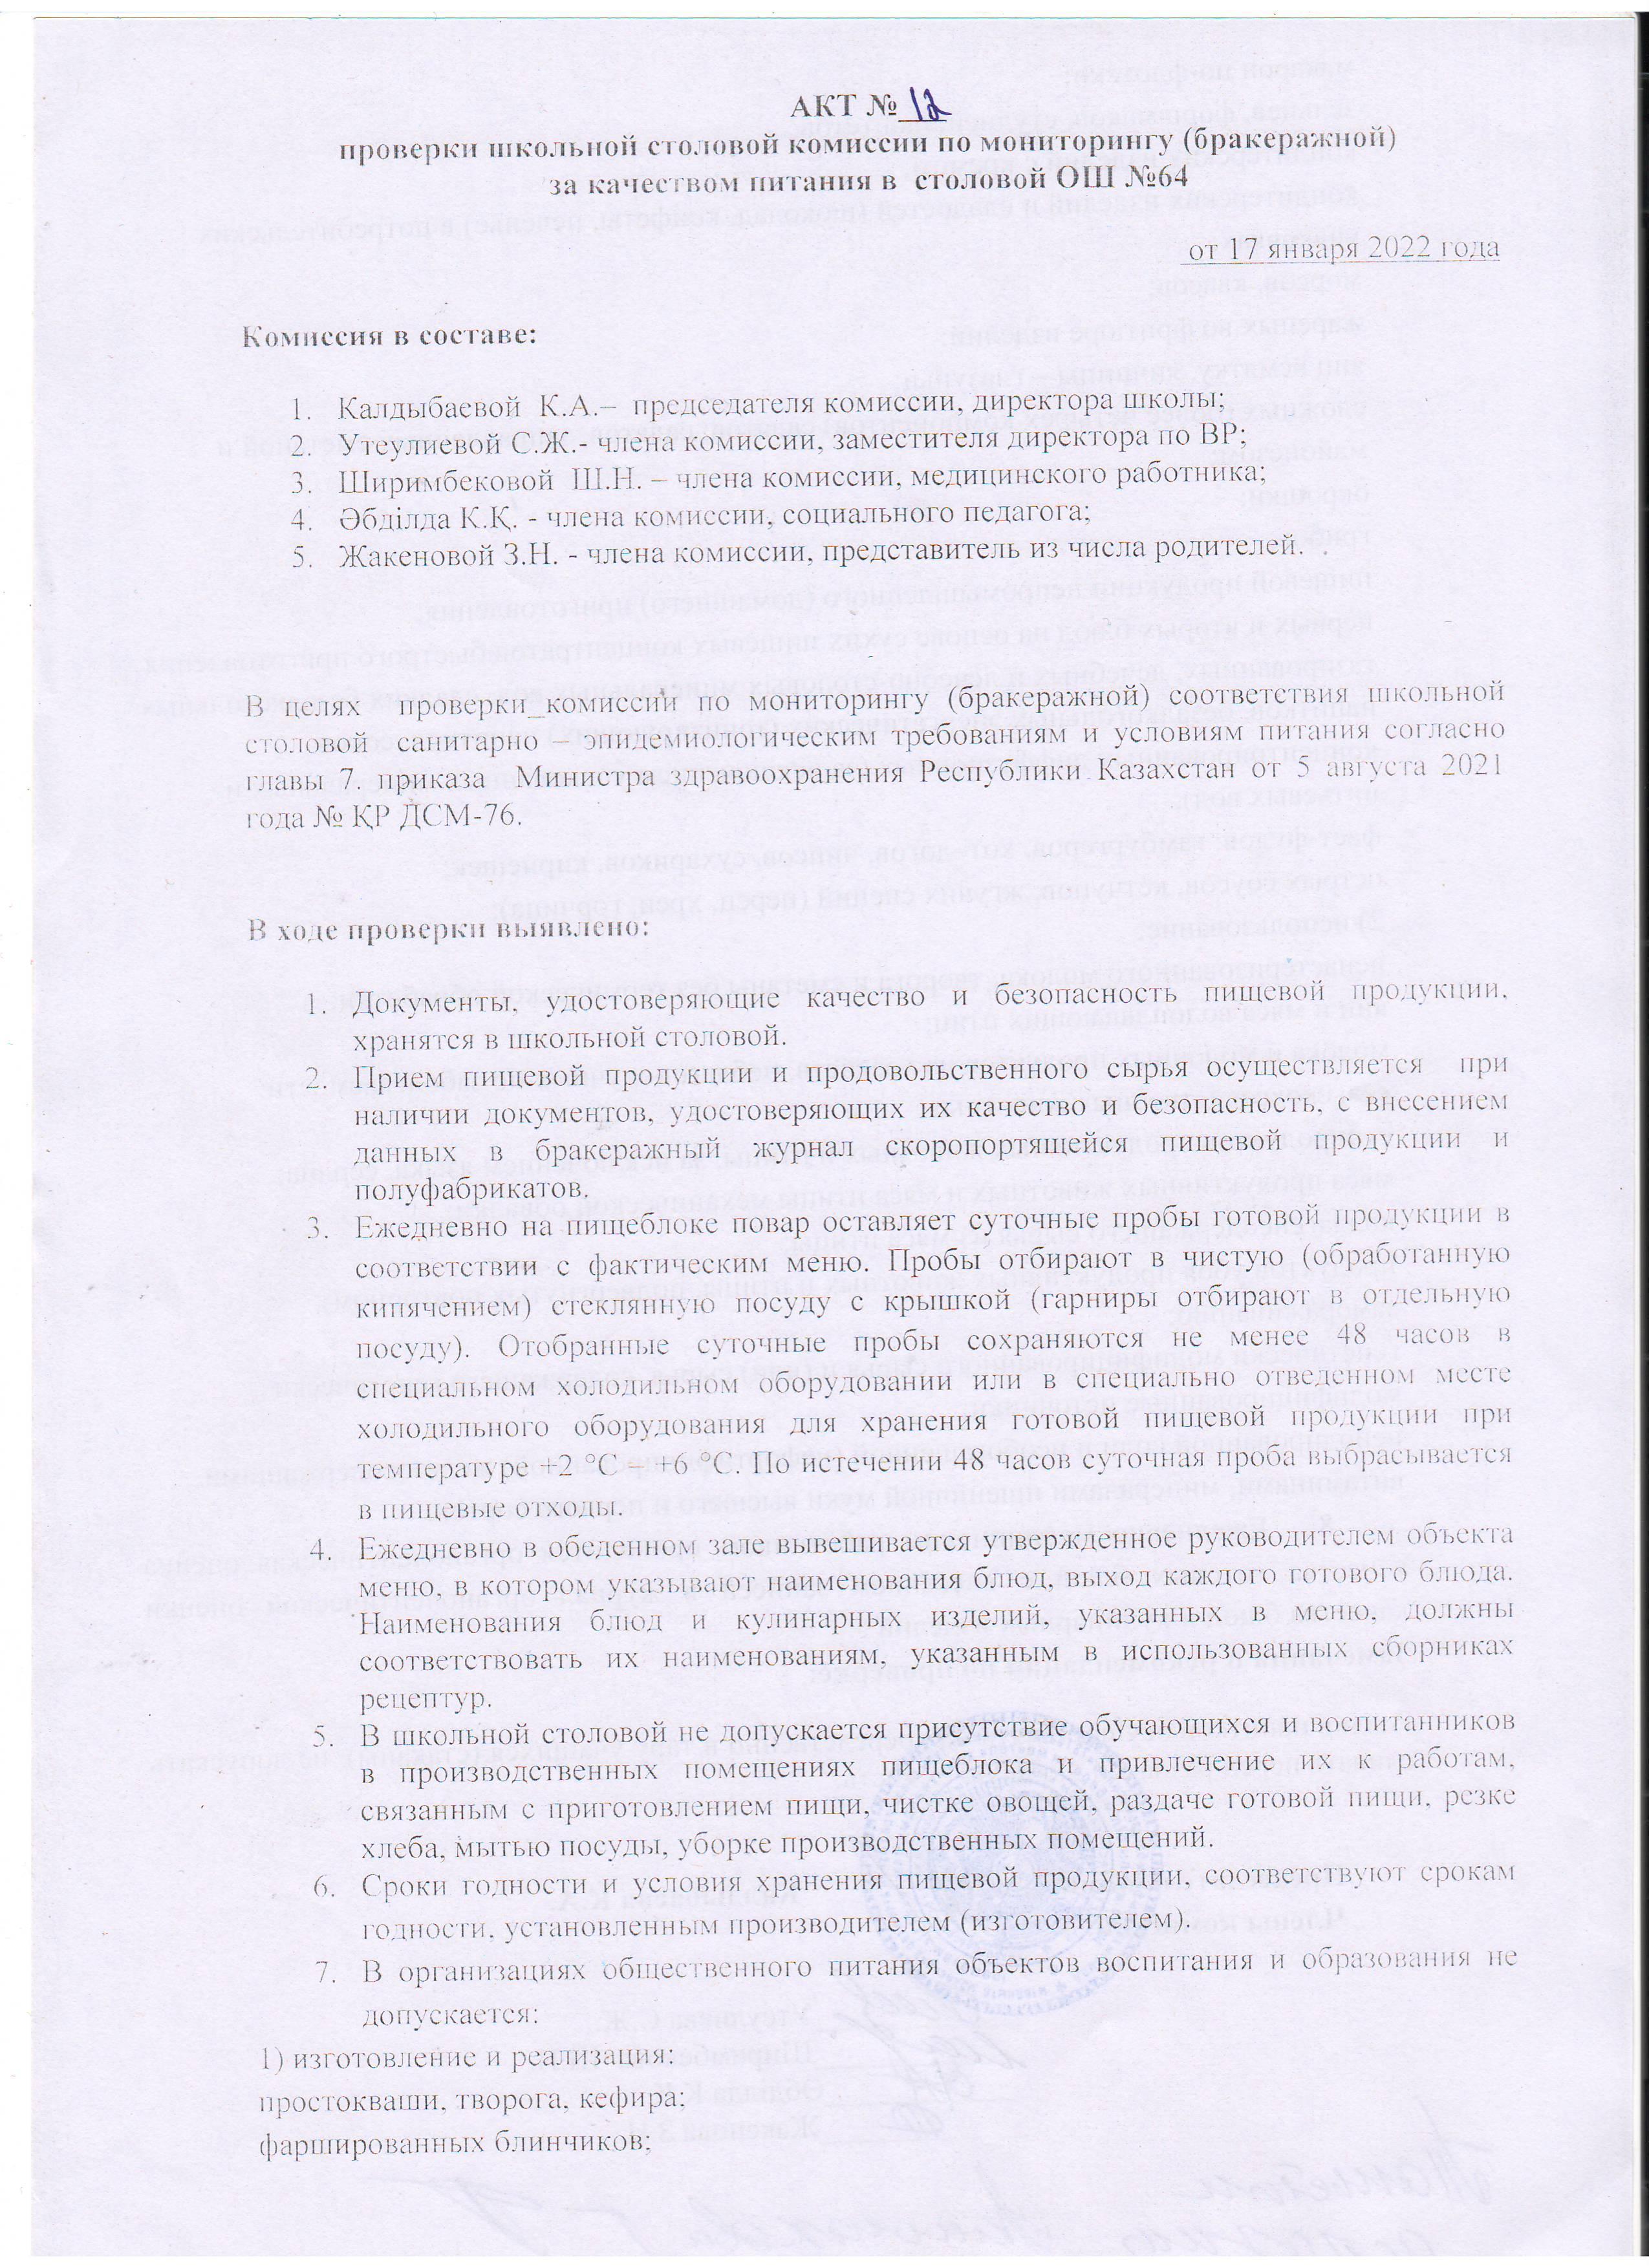 АКТ №12 проверки школьной столовой комиссии по мониторингу (бракеражной)